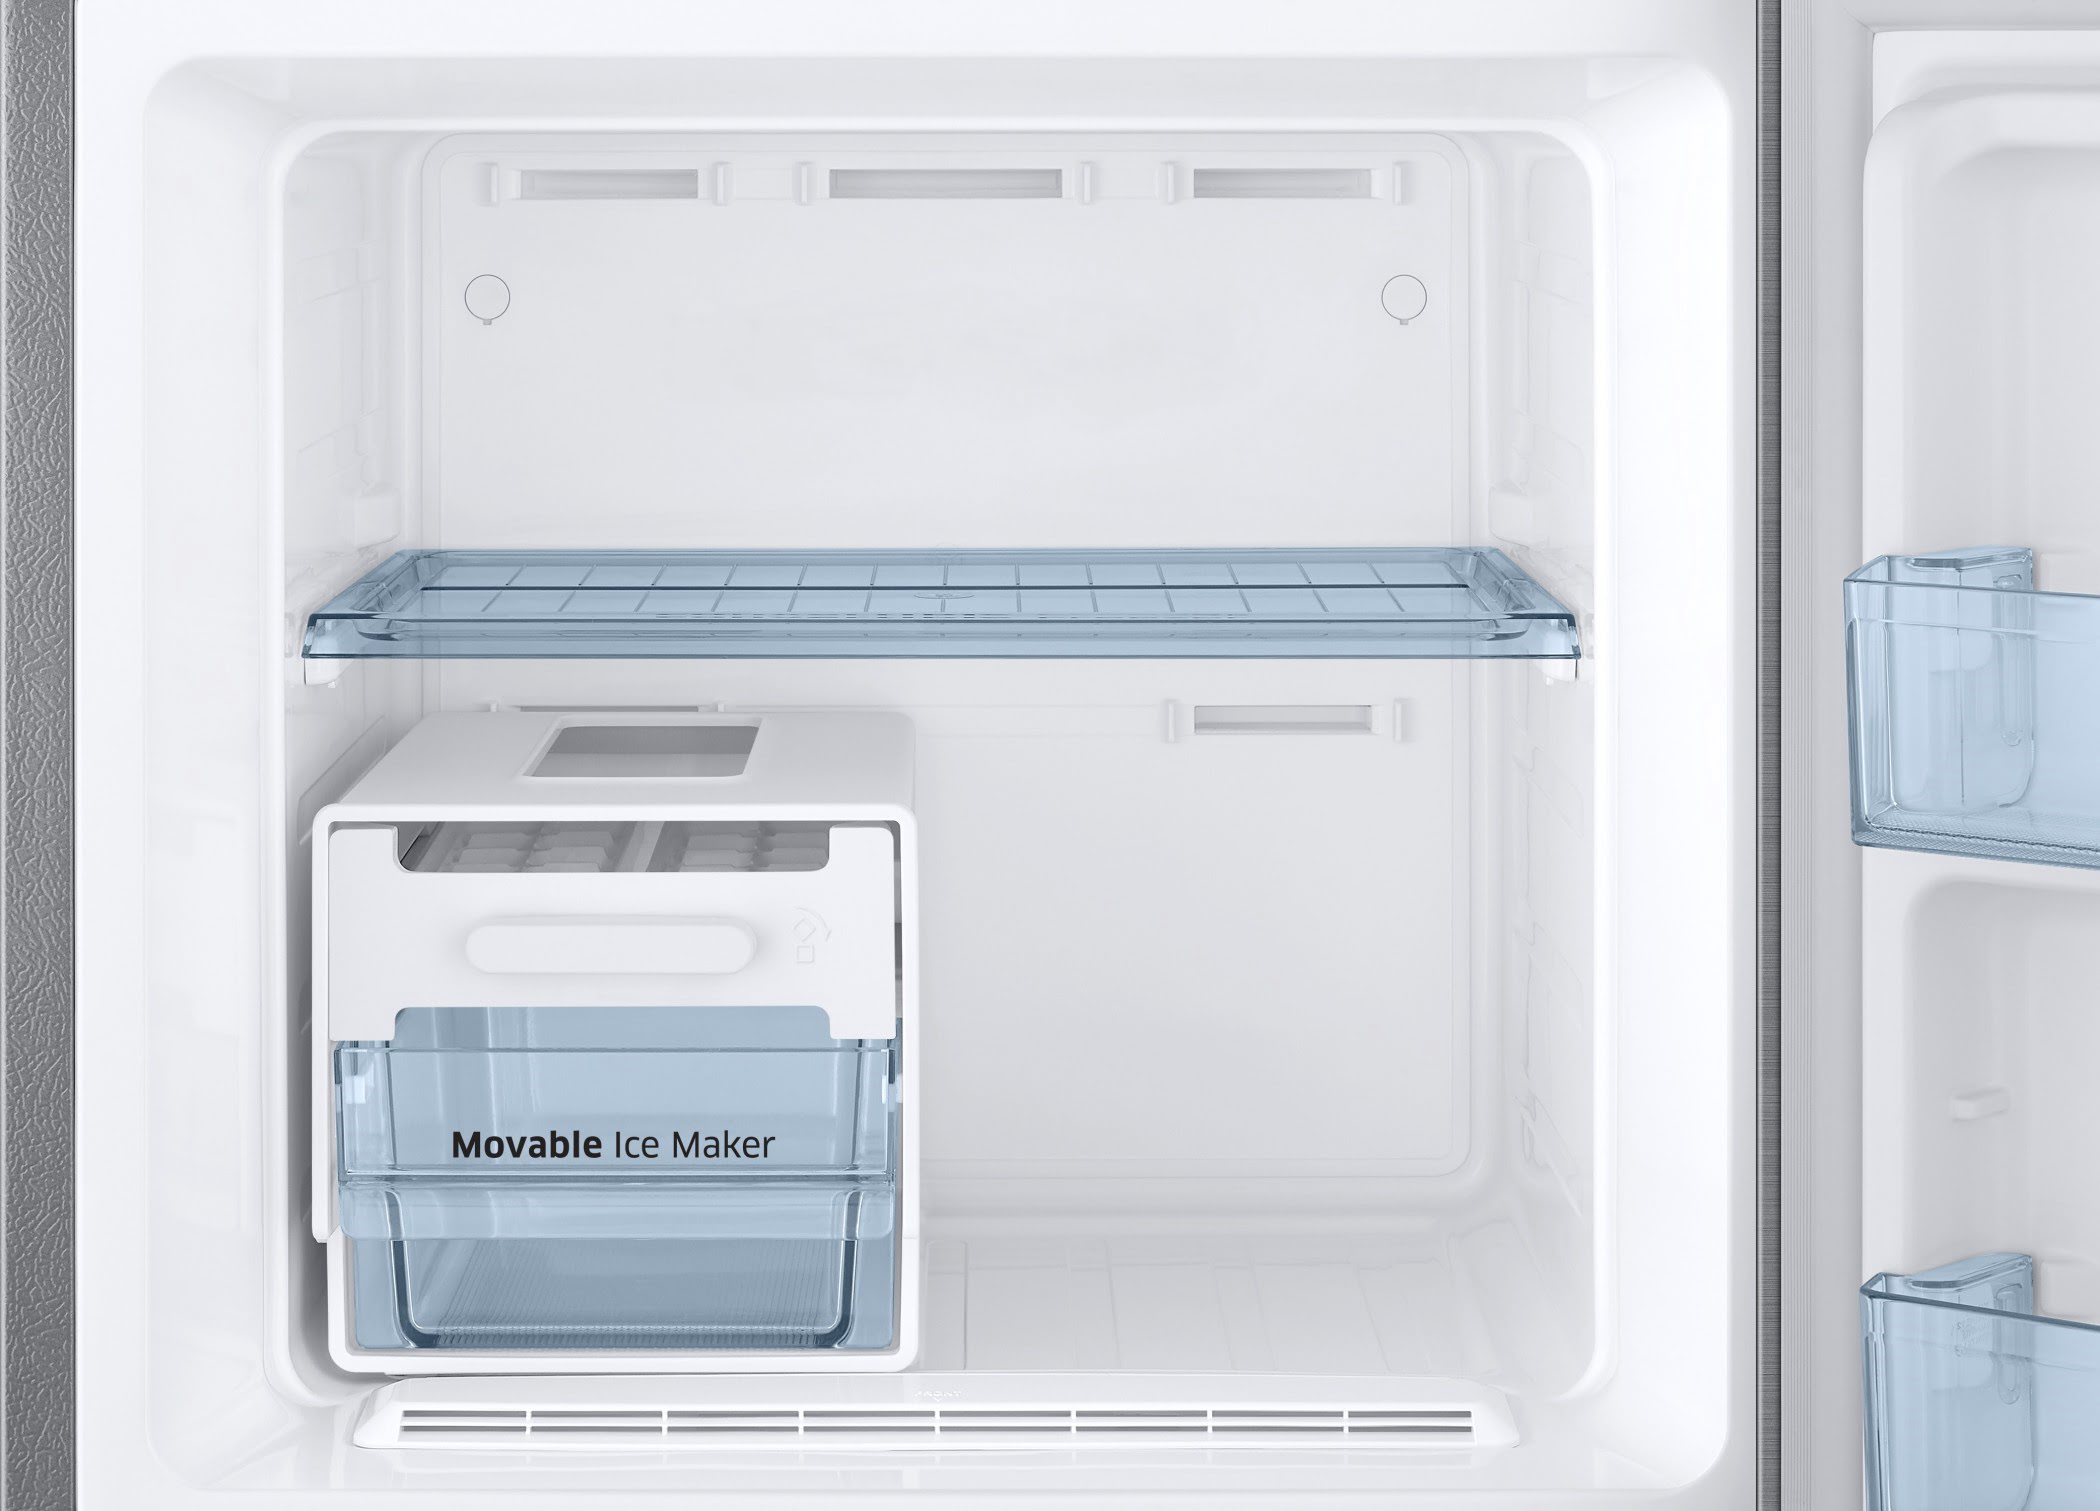 How To Fix The Error Code 14E For Samsung Refrigerator